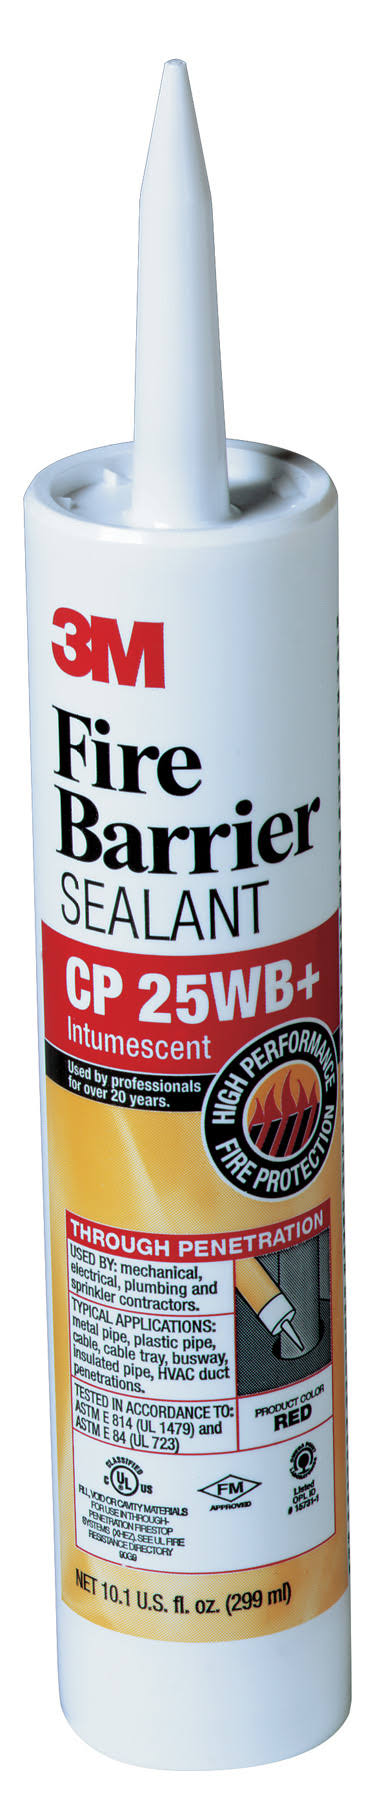 3M Fire Barrier Sealant CP 25WB